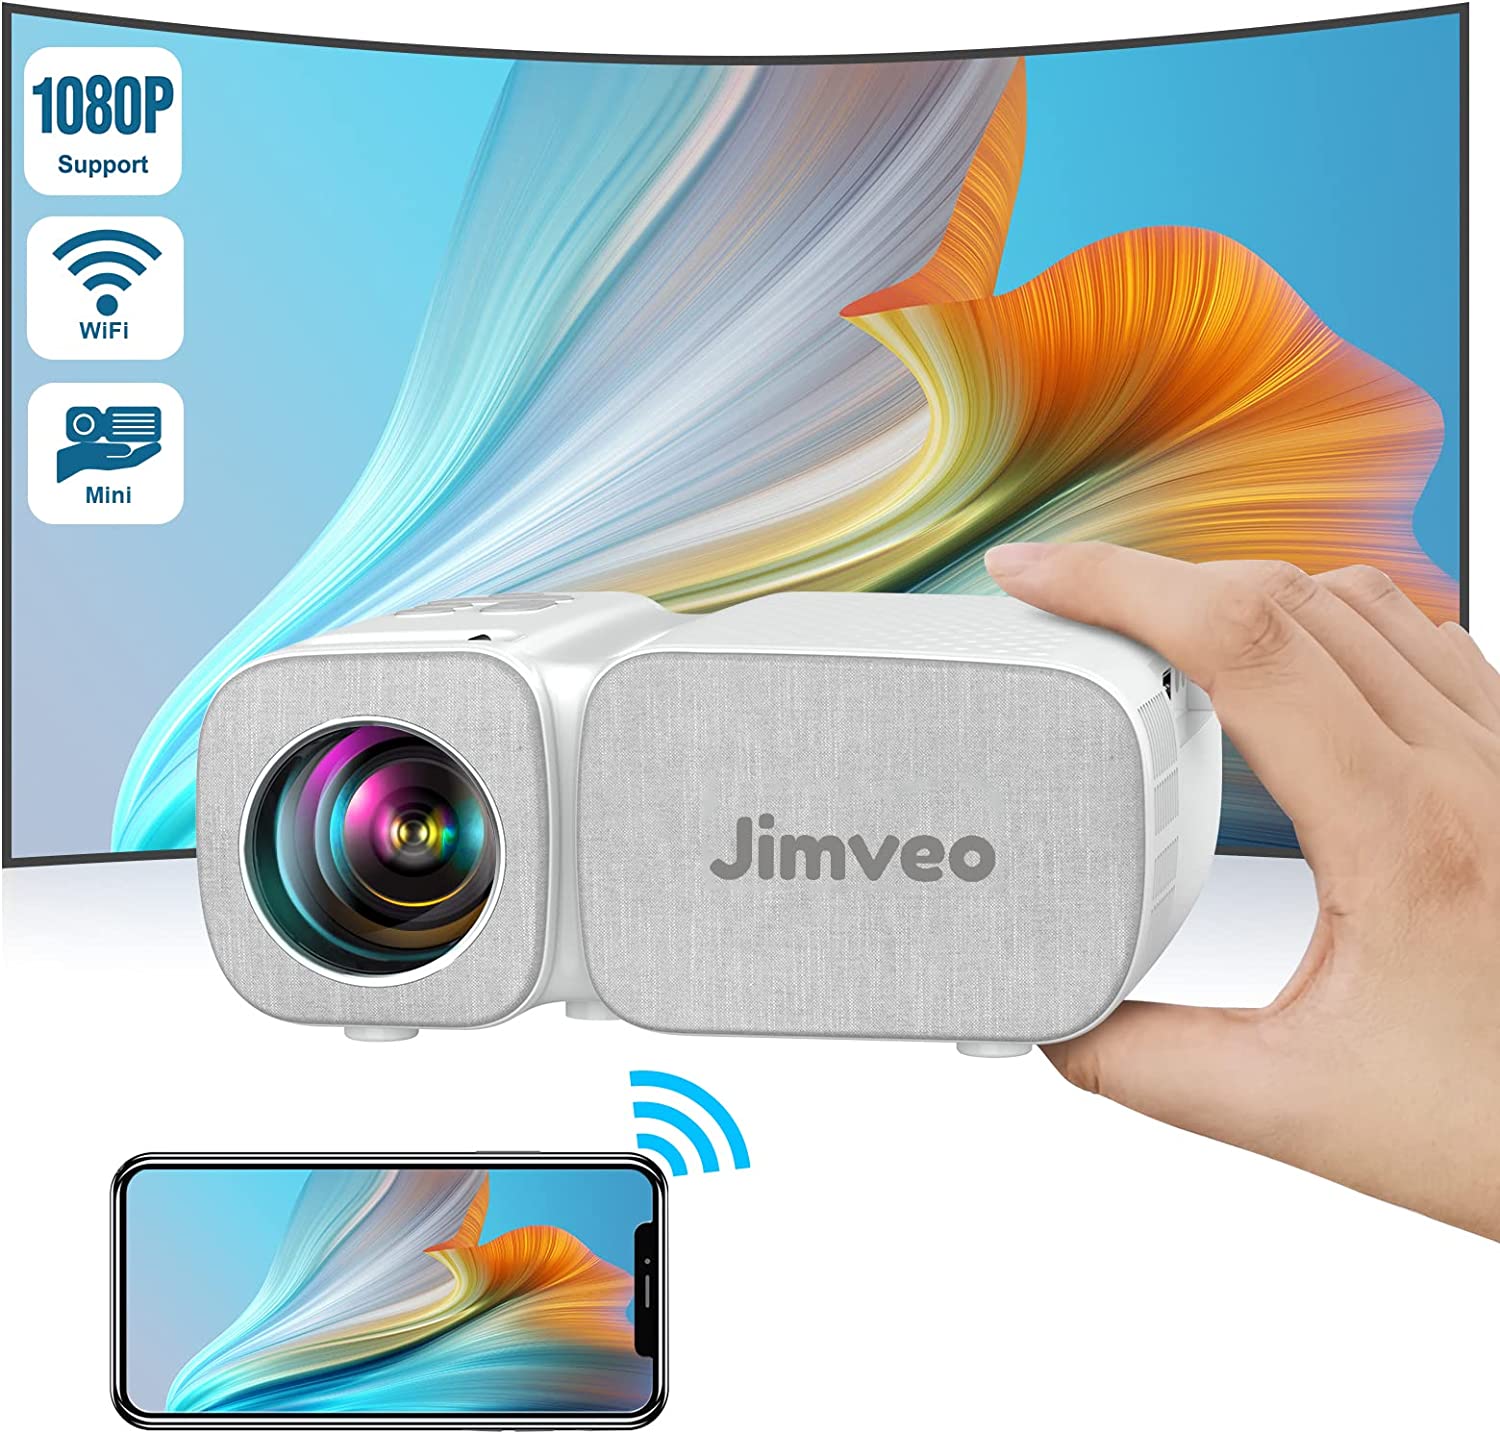 Réduction sur le vidéoprojecteur portable Jimveo C11 © Amazon